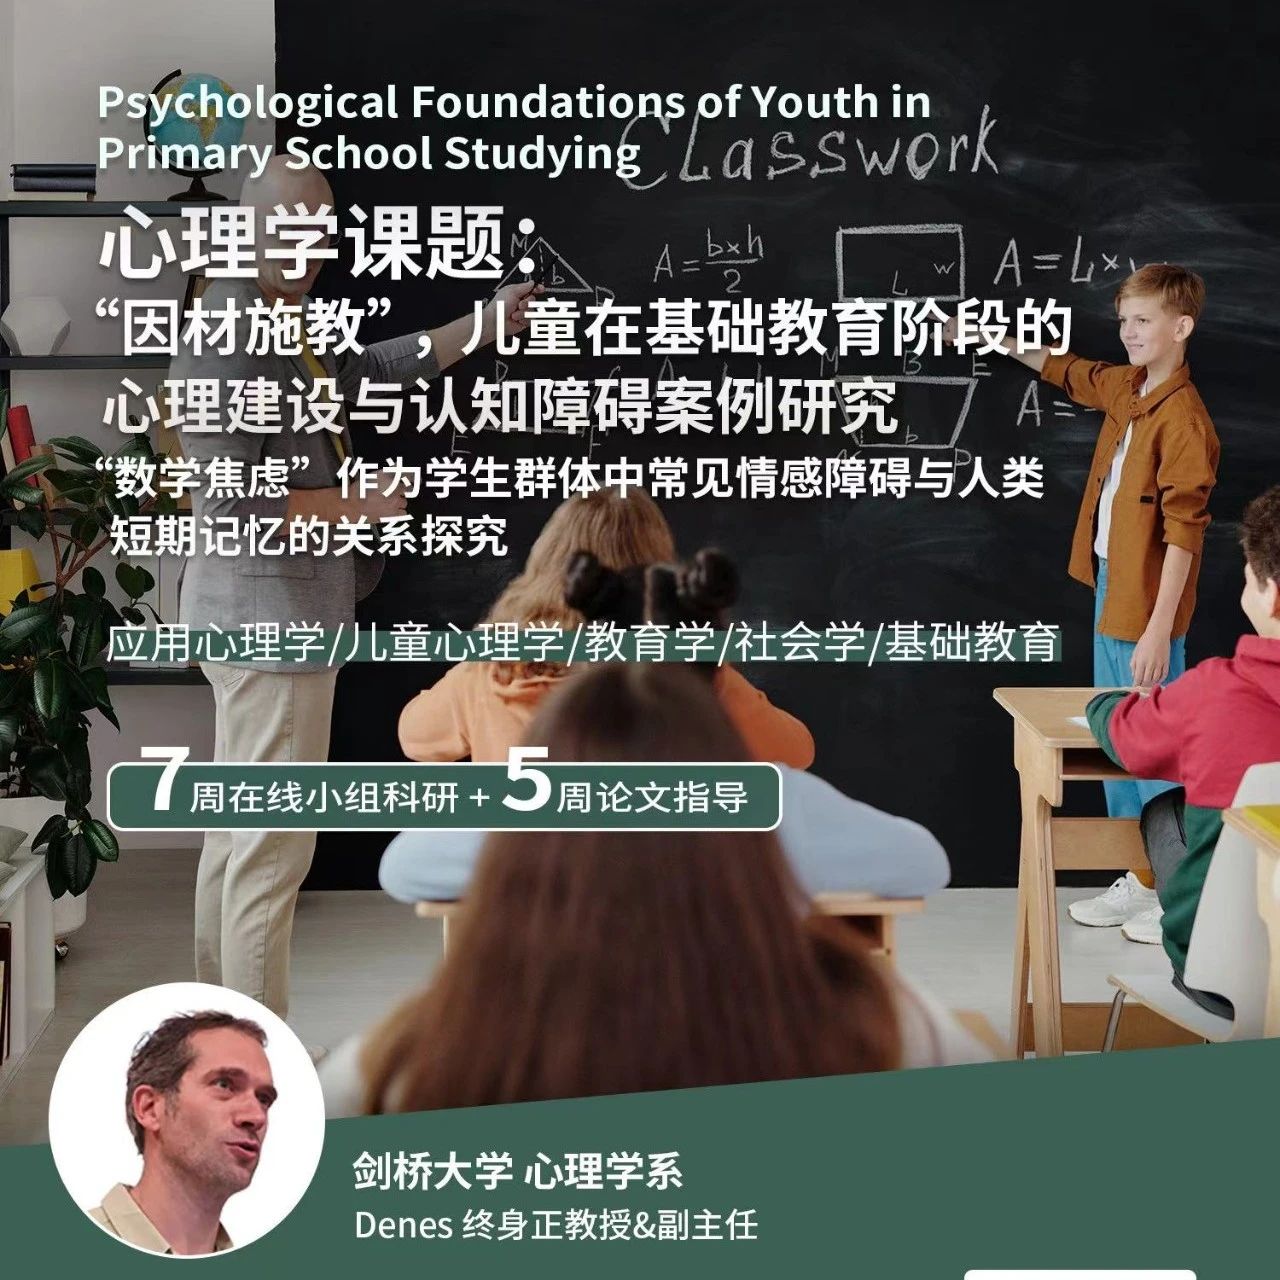 剑桥大学心理学课题：“因材施教”，儿童在基础教育阶段的心理建设与认知障碍案例研究